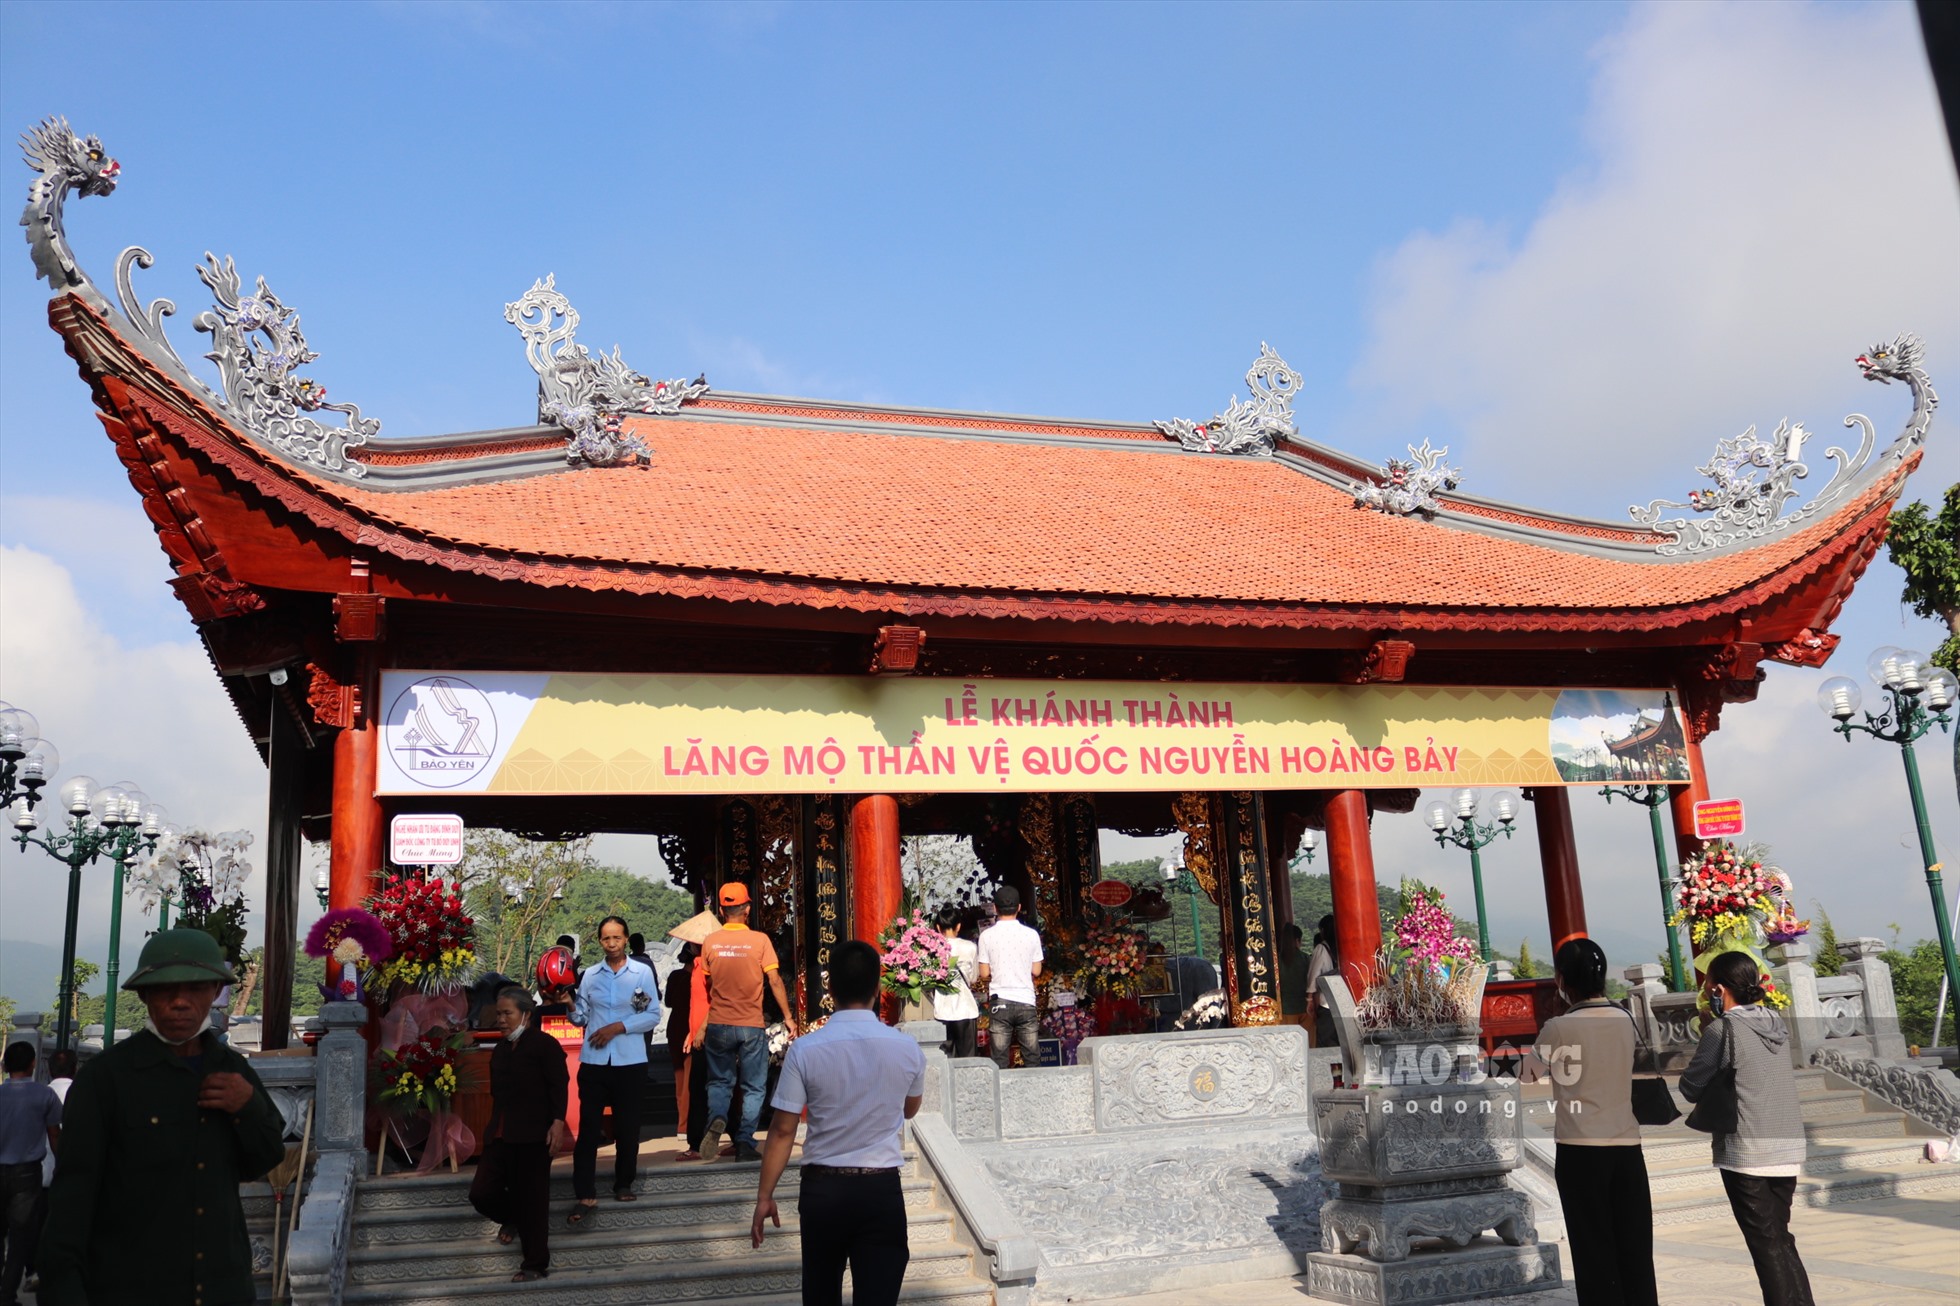 Đền Bảo Hà ở xã Bảo Hà, huyện Bảo Yên, tỉnh Lào Cai từ lâu được biết đến là một địa chỉ văn hóa tâm linh với tên gọi dân gian là Đền ông Hoàng Bảy.